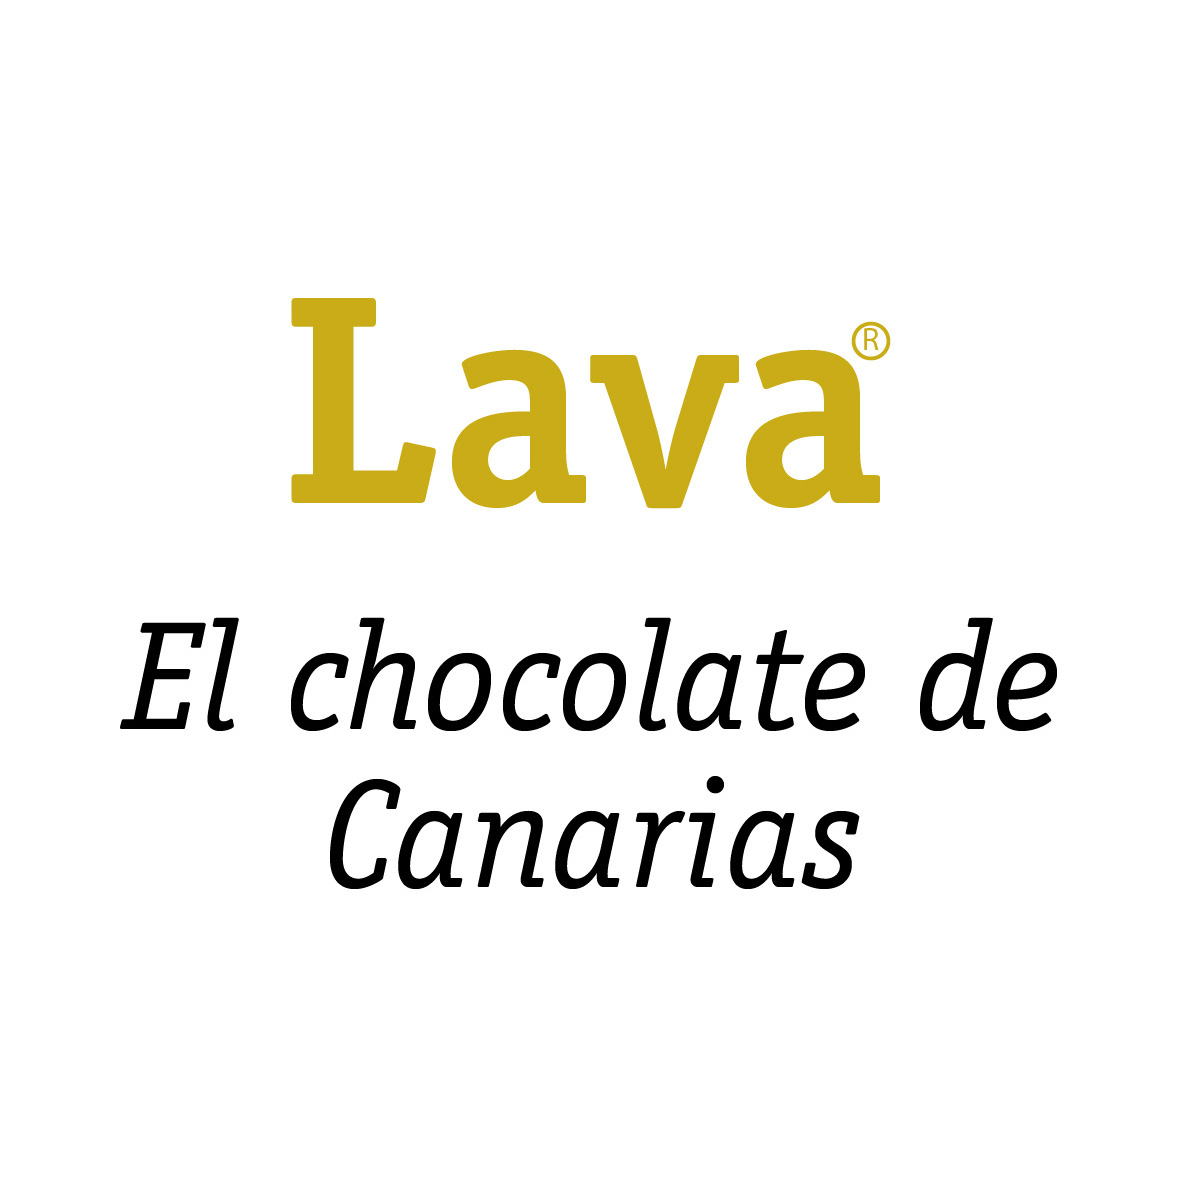 (c) Chocolatedecanarias.es